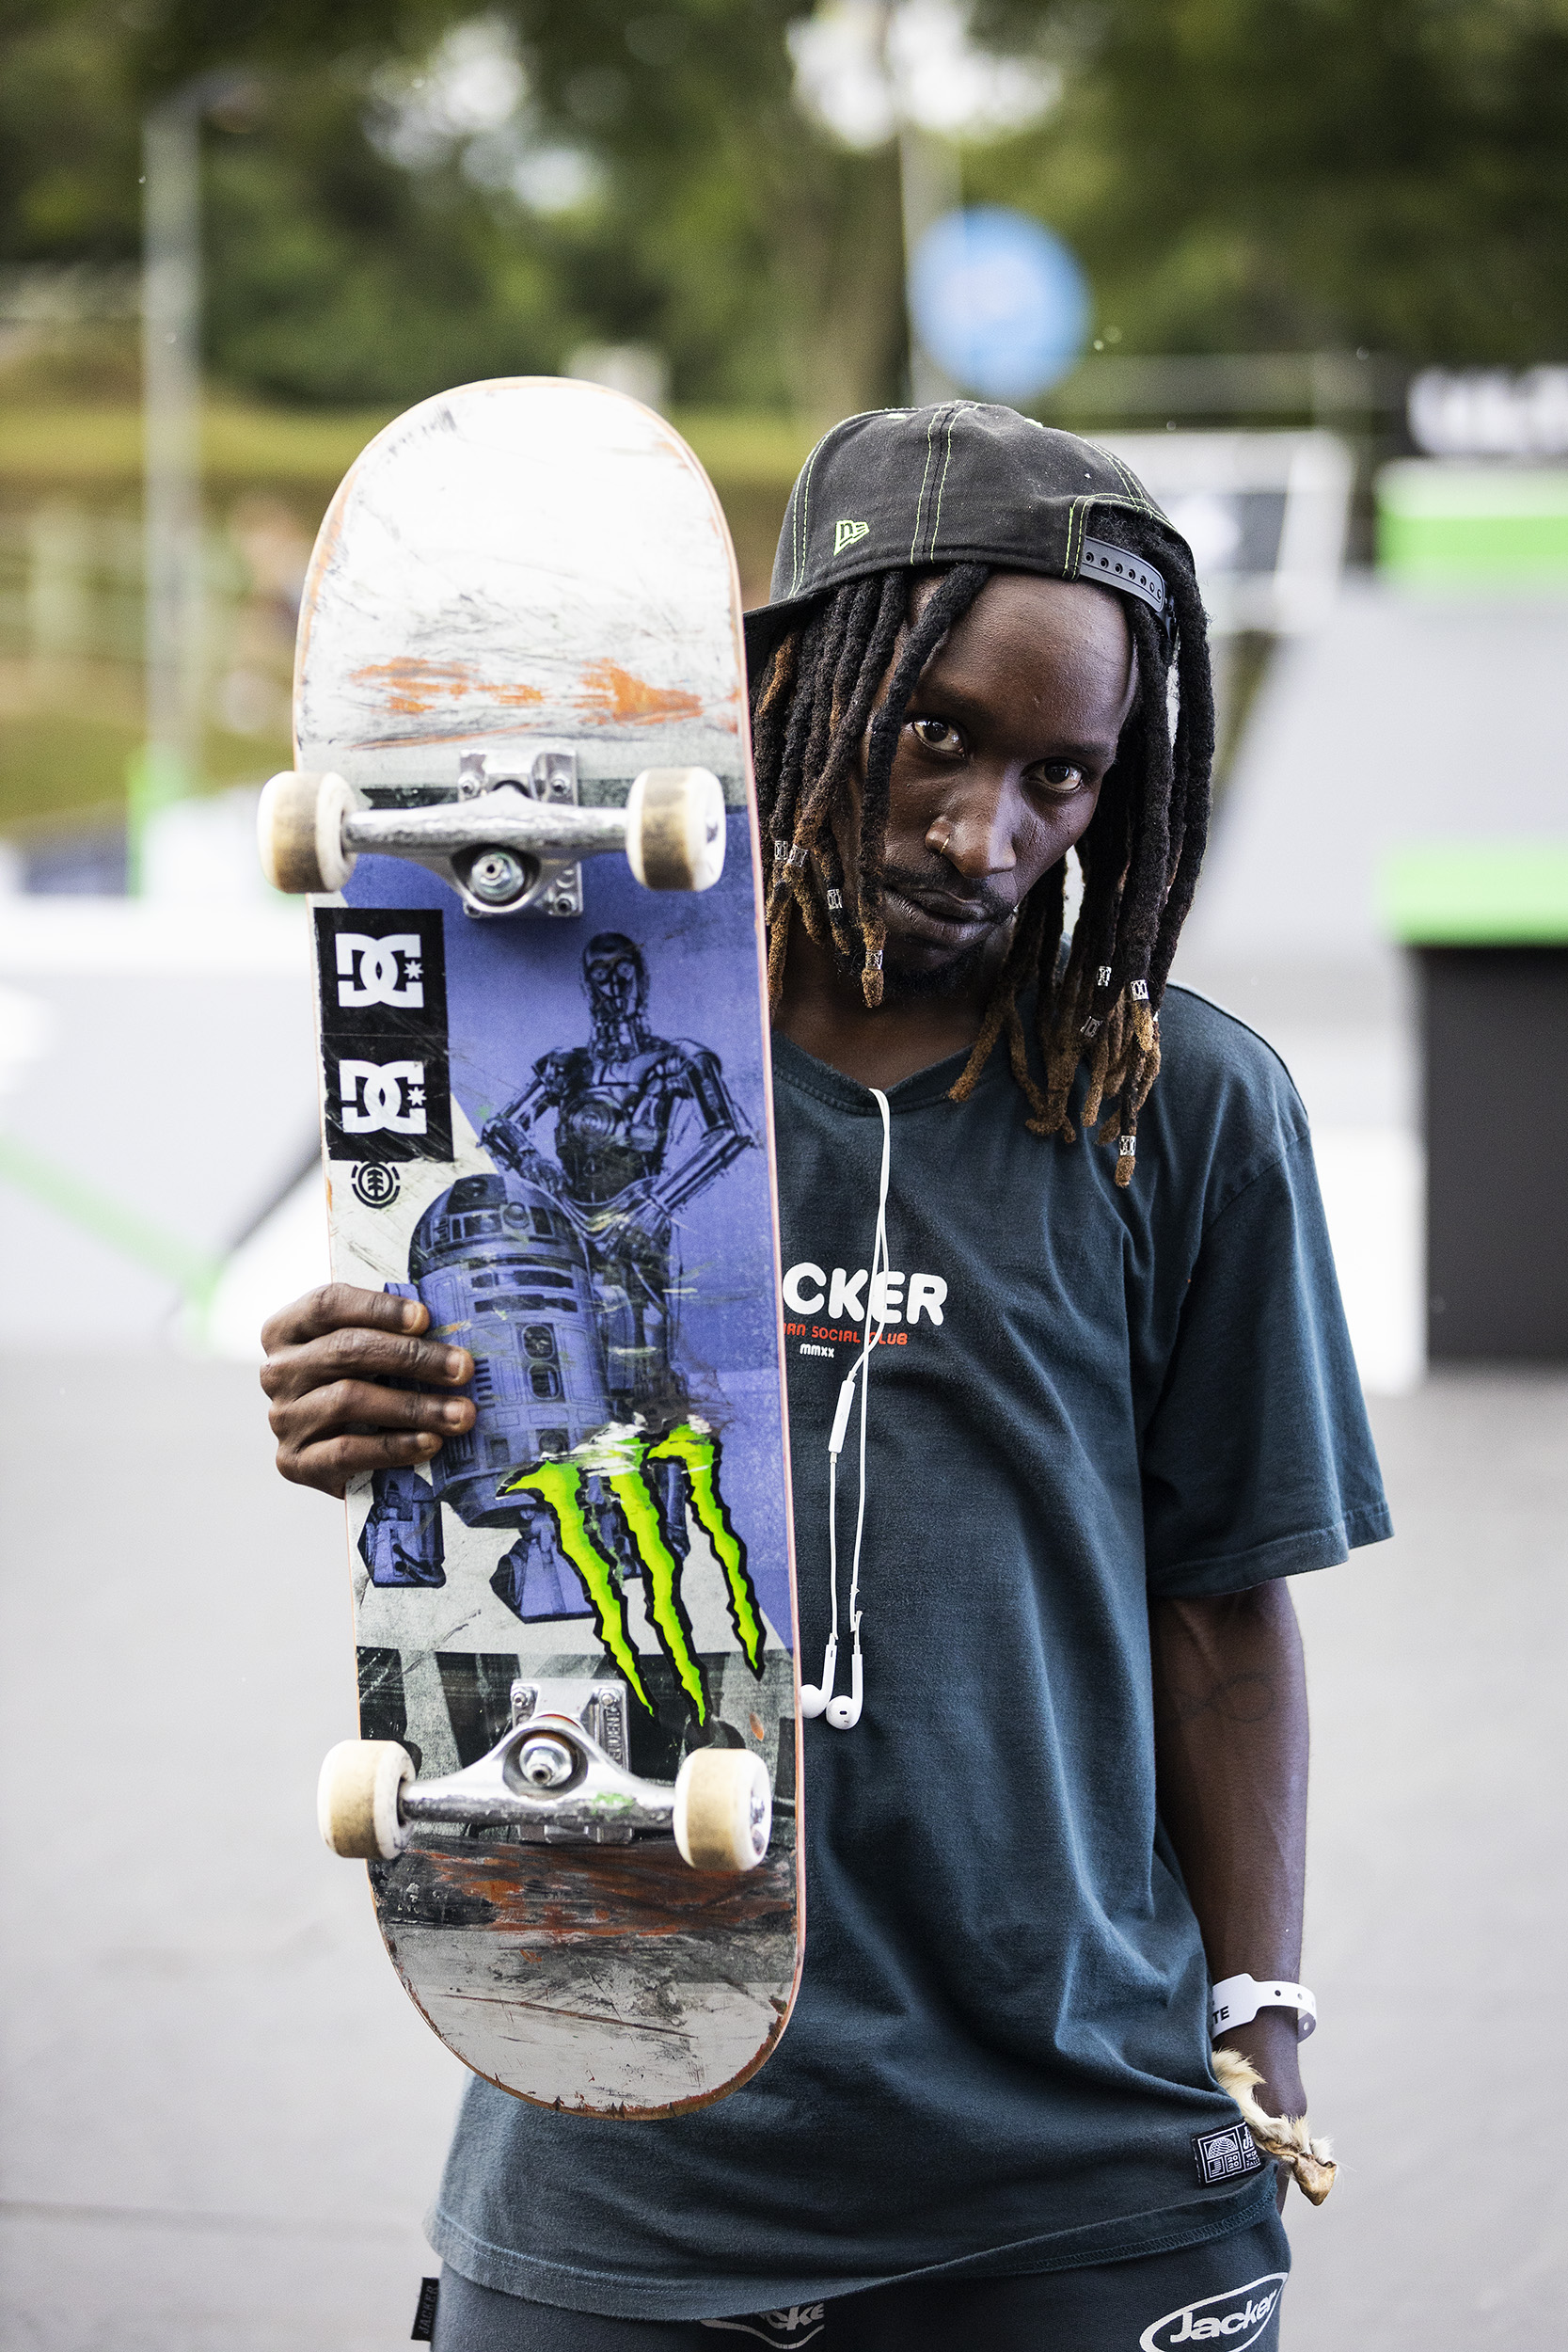 Monster Energy Rider Khule Ngubane is New African Skateboarding Champion